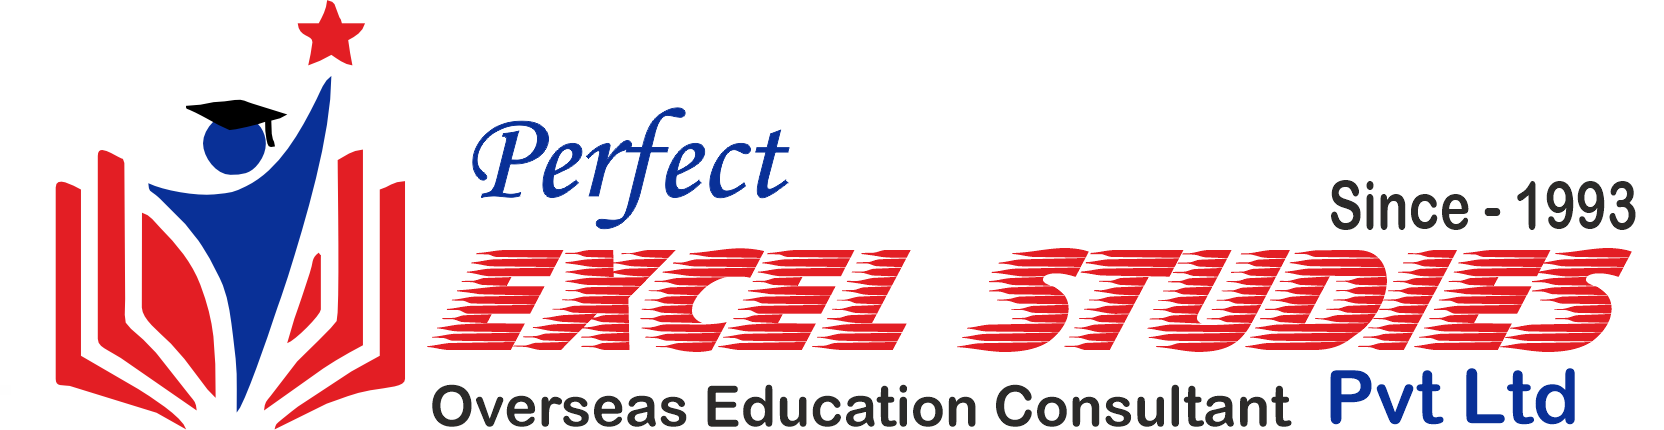 perfectexcel-logo-2